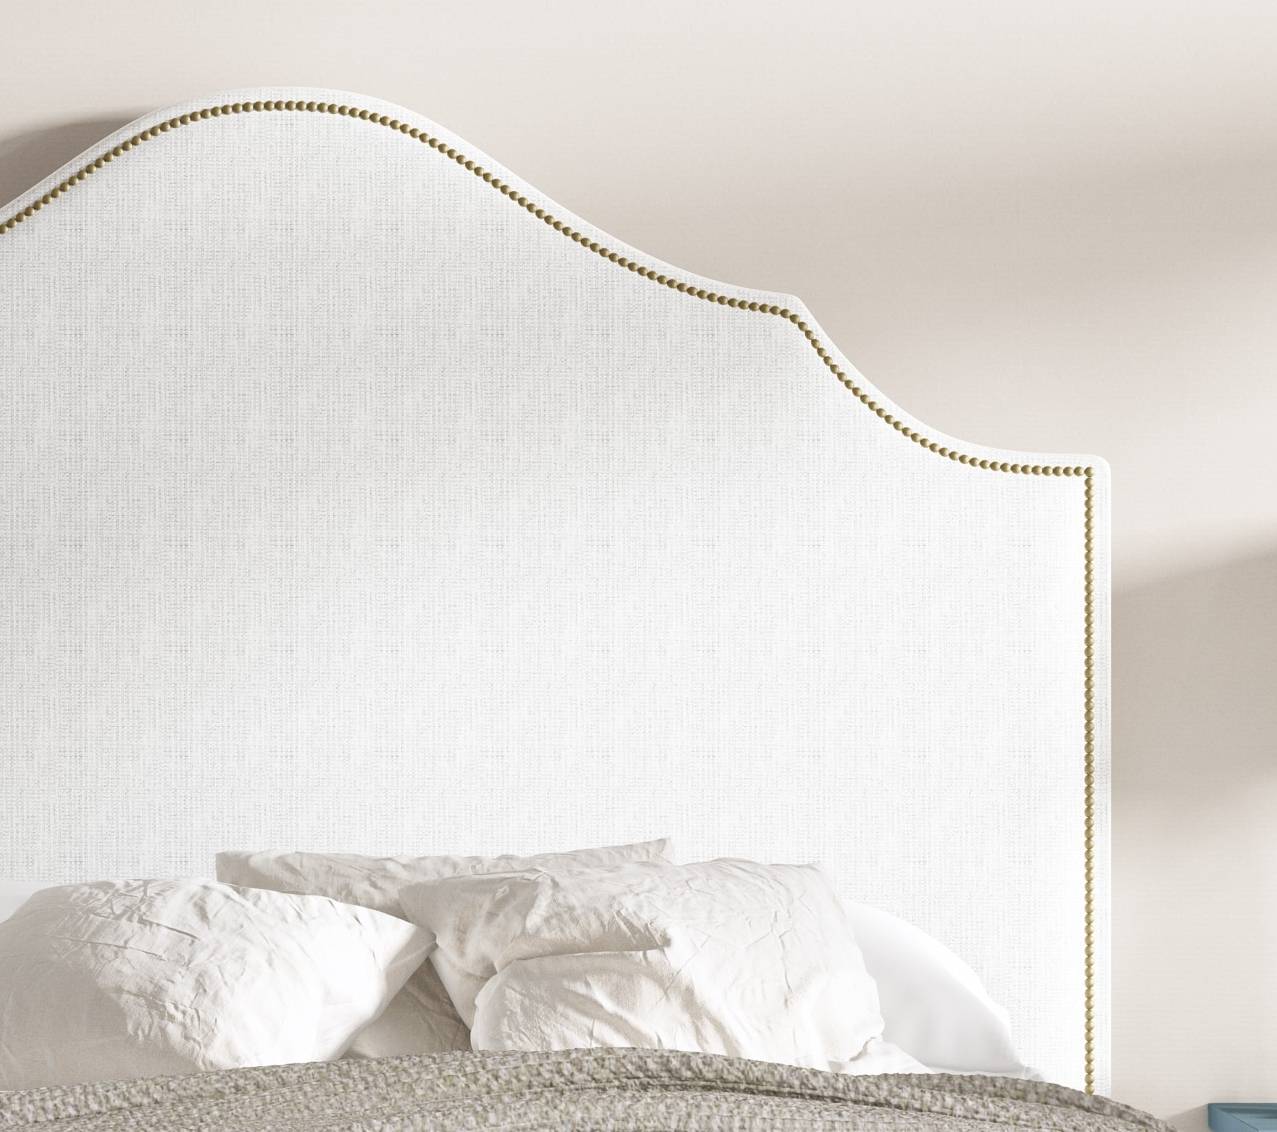 Cabezal Praga Tapizado - Cabecero de cama de matrimonio tapizado